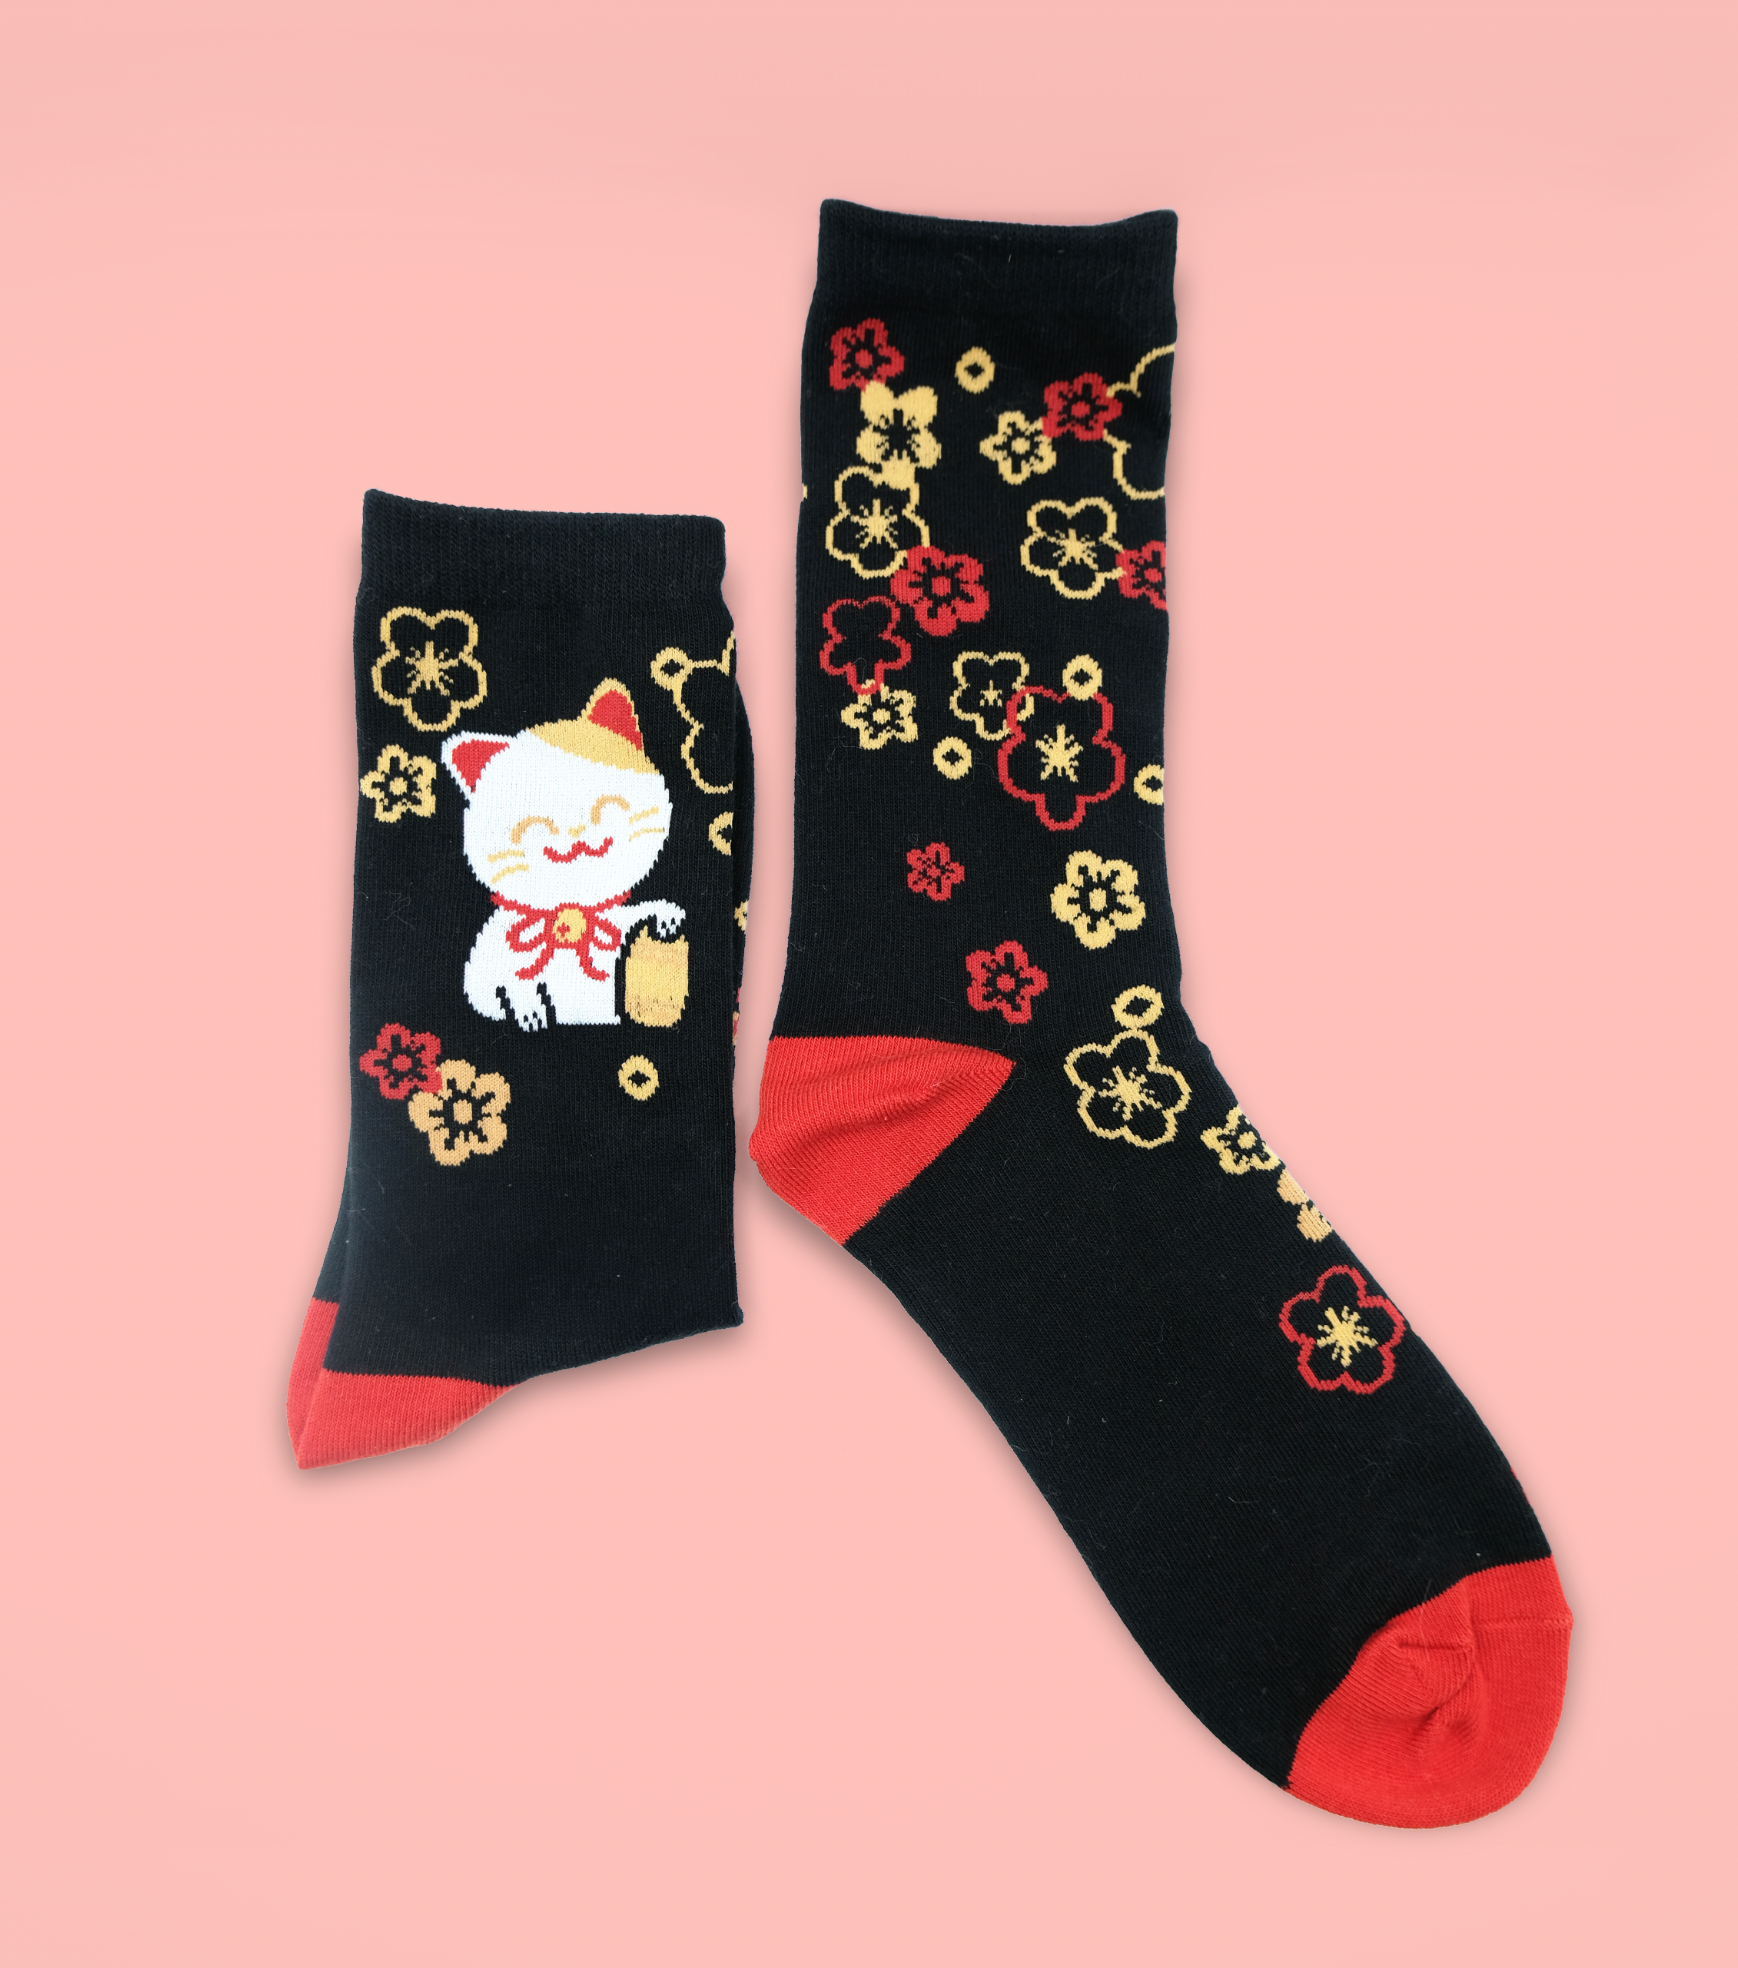 Socks - Lucky Cat